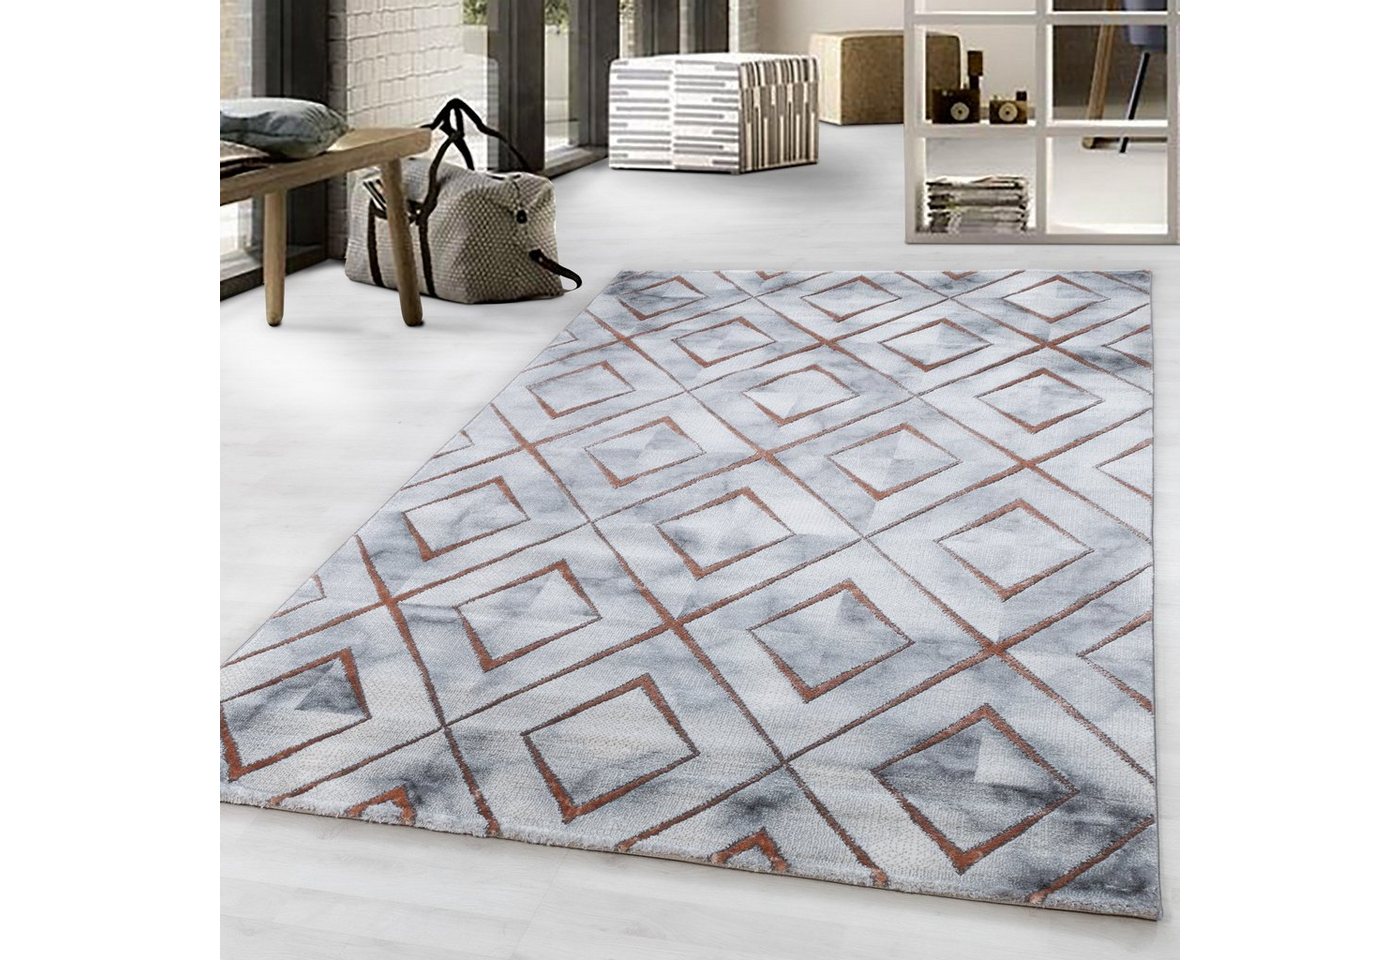 Designteppich Marmoroptik Flachflorteppich Kurzflorteppich Wohnzimmer Muster, Miovani von Miovani